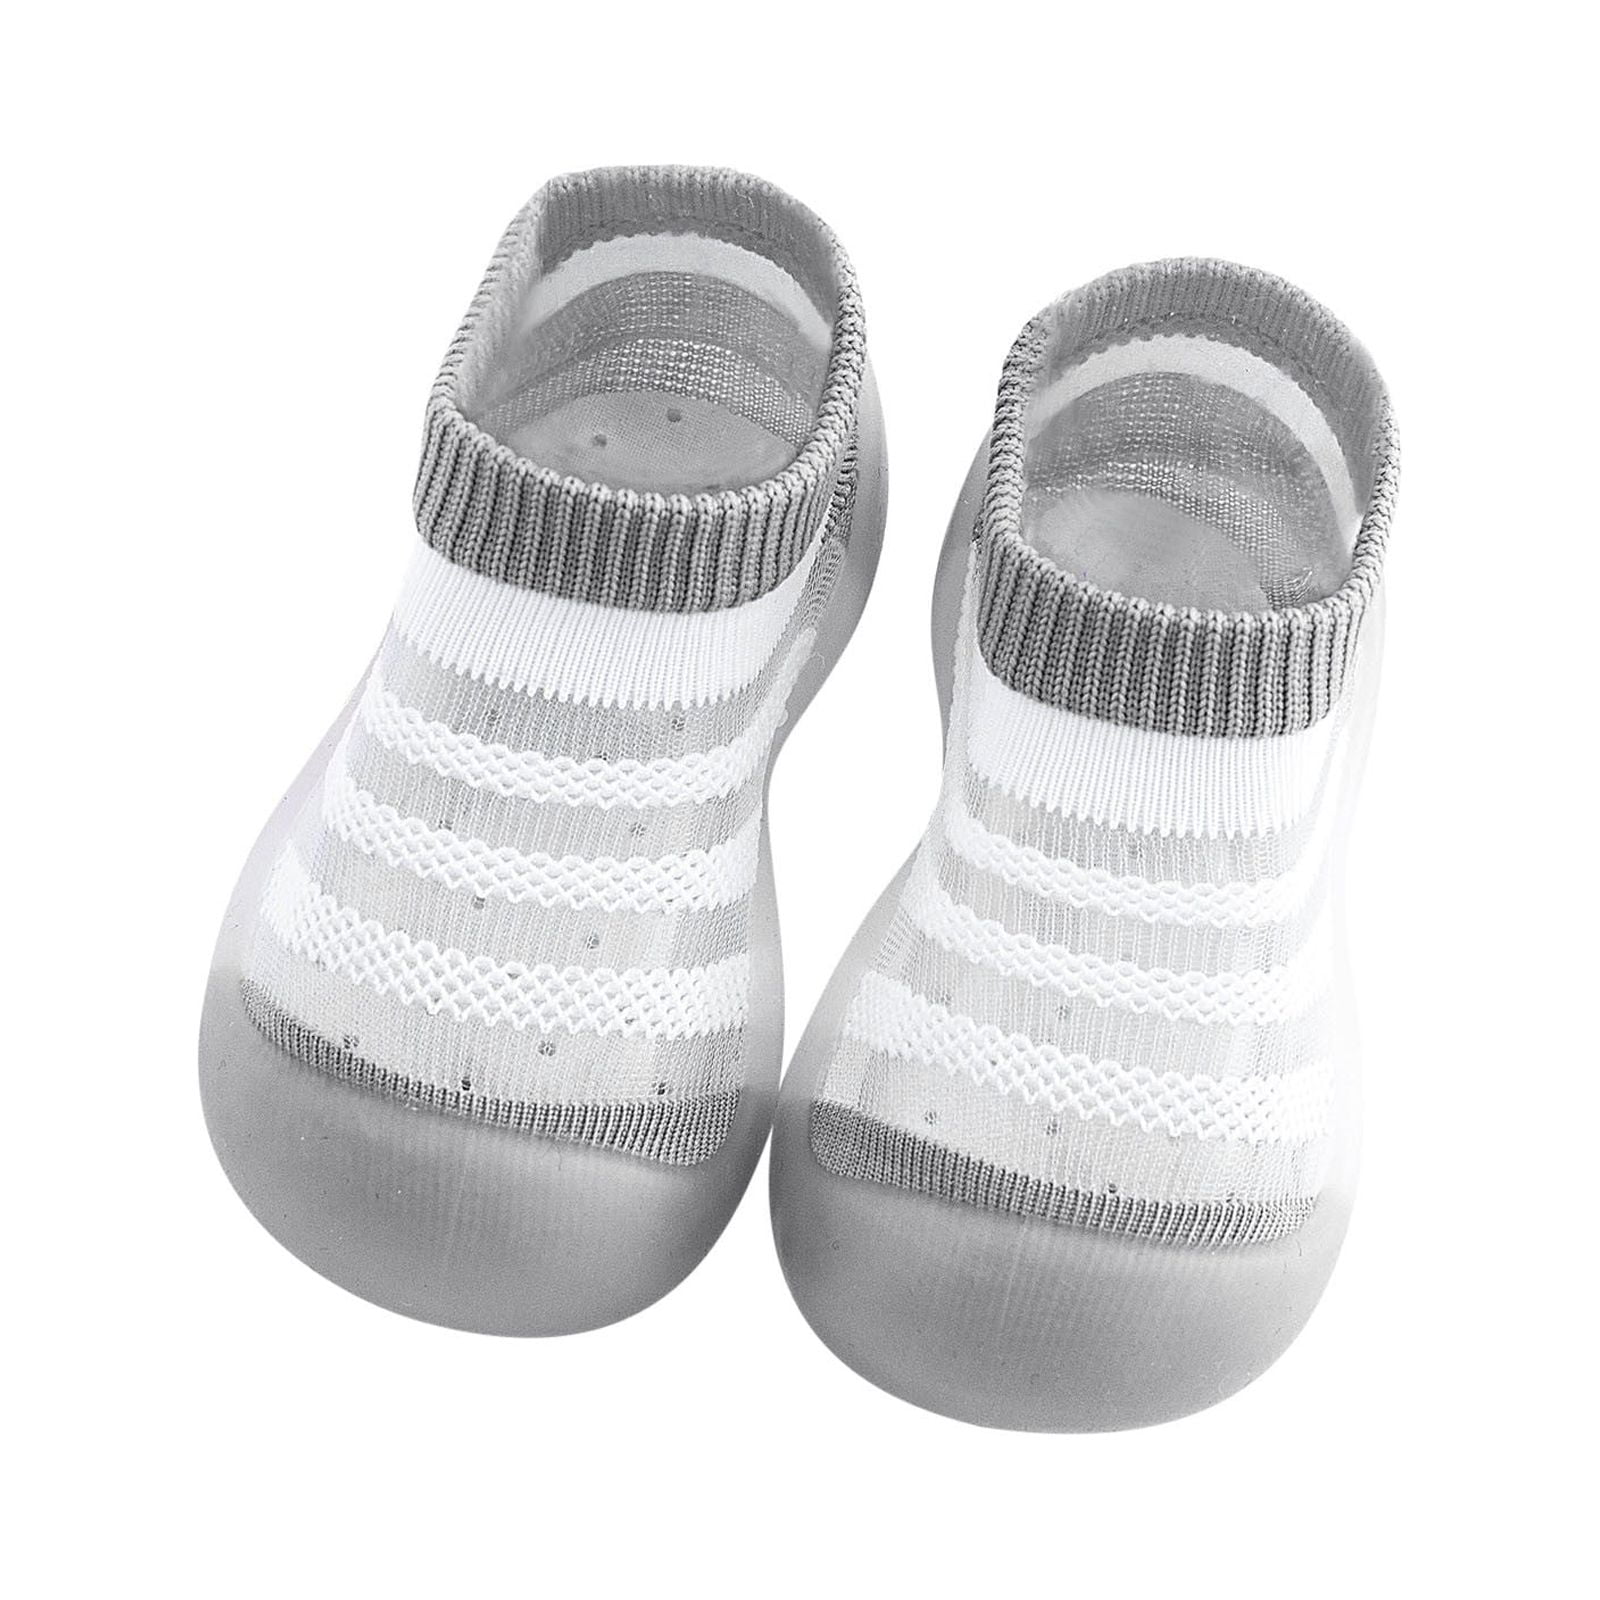 HBYJLZYG Baby Sock Shoes Floor Socks Hollow Anti-Slip Ankle Prewalker ...